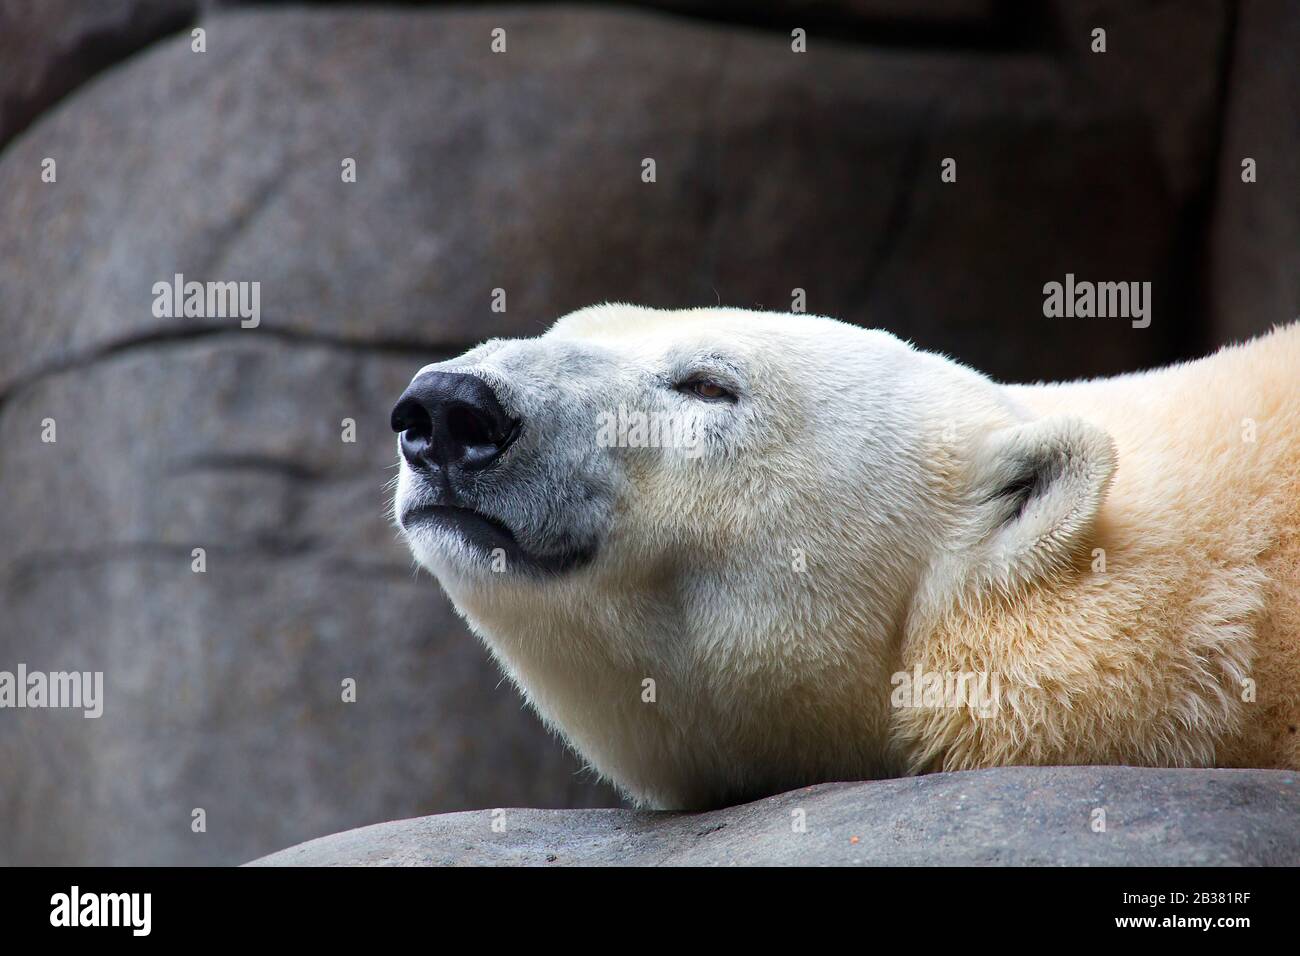 Entspannter Eisbär, ursus maritimus / entspannter Eisbär, ursus maritimus Stockfoto